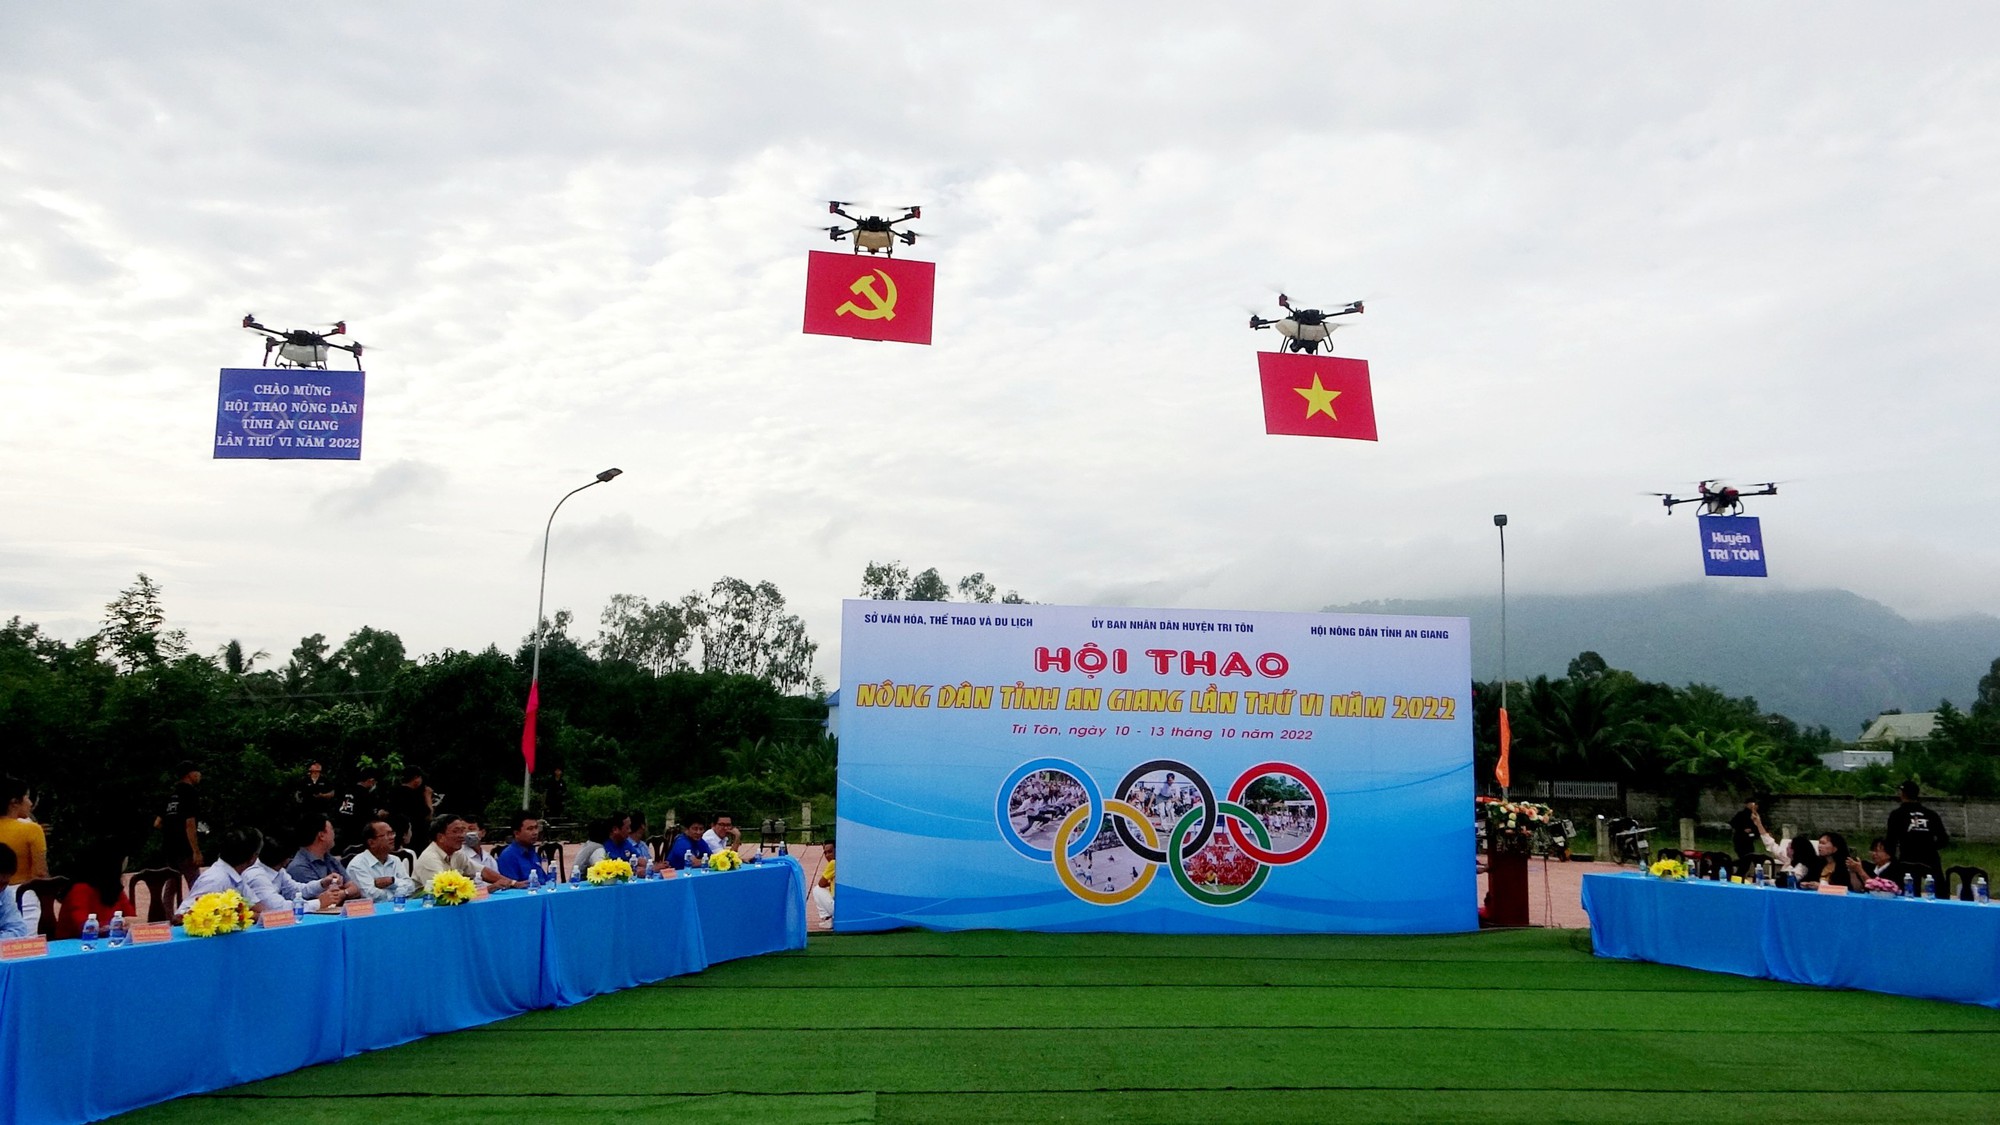  14 máy bay không người lái kéo cờ Tổ quốc, cờ Đảng tại lễ khai mạc tại Hội thao Nông dân tỉnh An Giang - Ảnh 3.